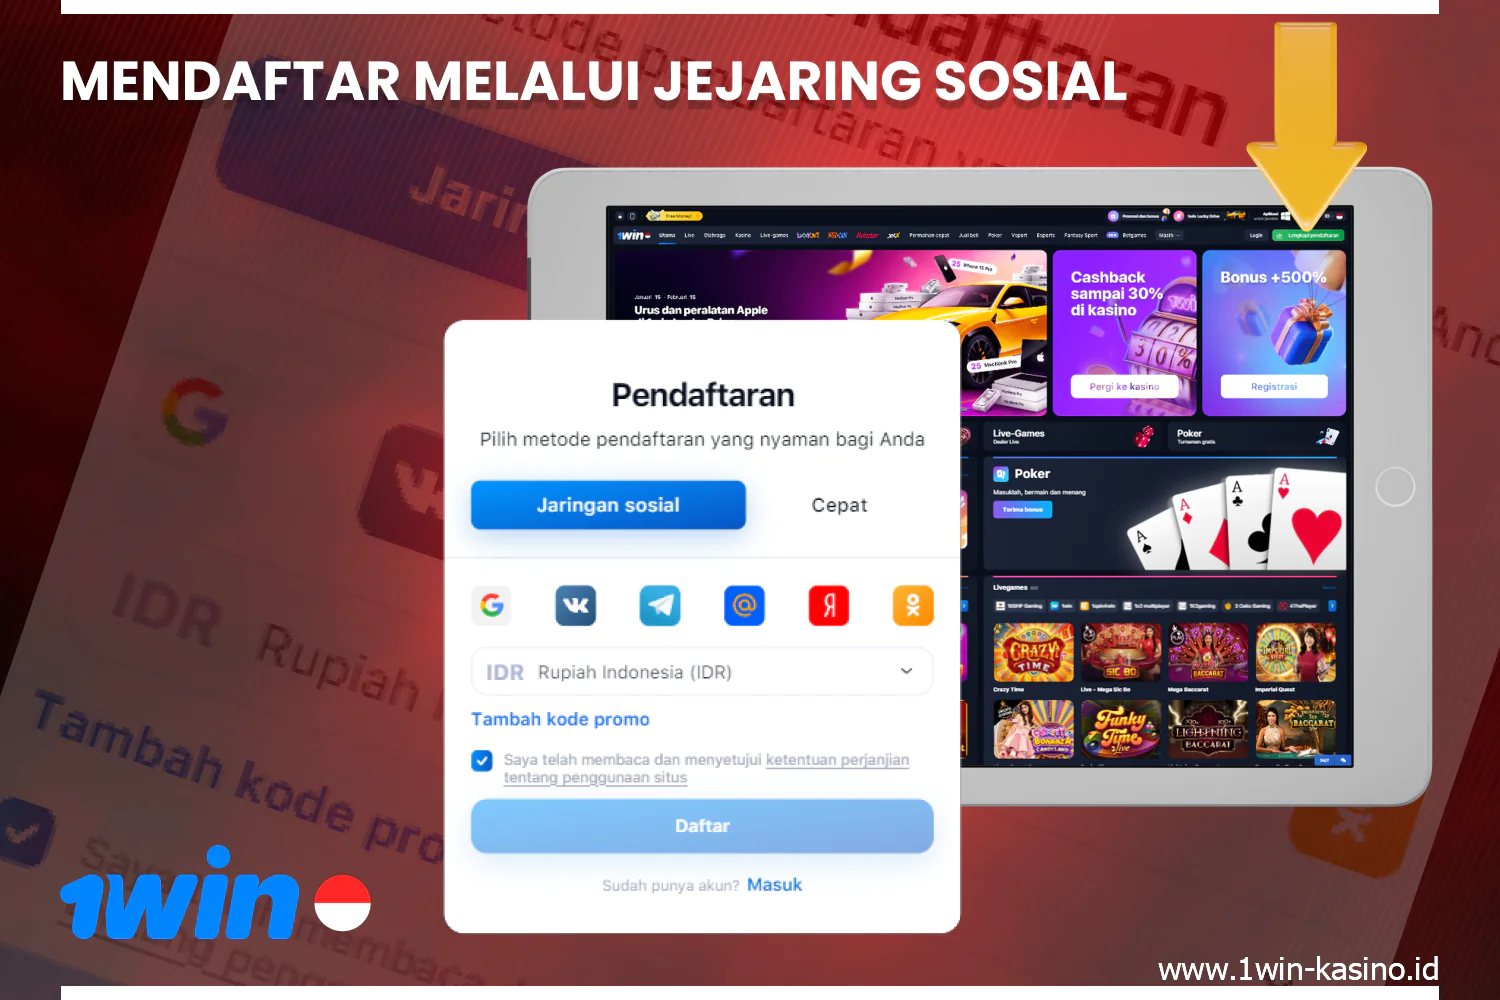 Pengguna dari Indonesia dapat mendaftar di 1win casino melalui jejaring sosial